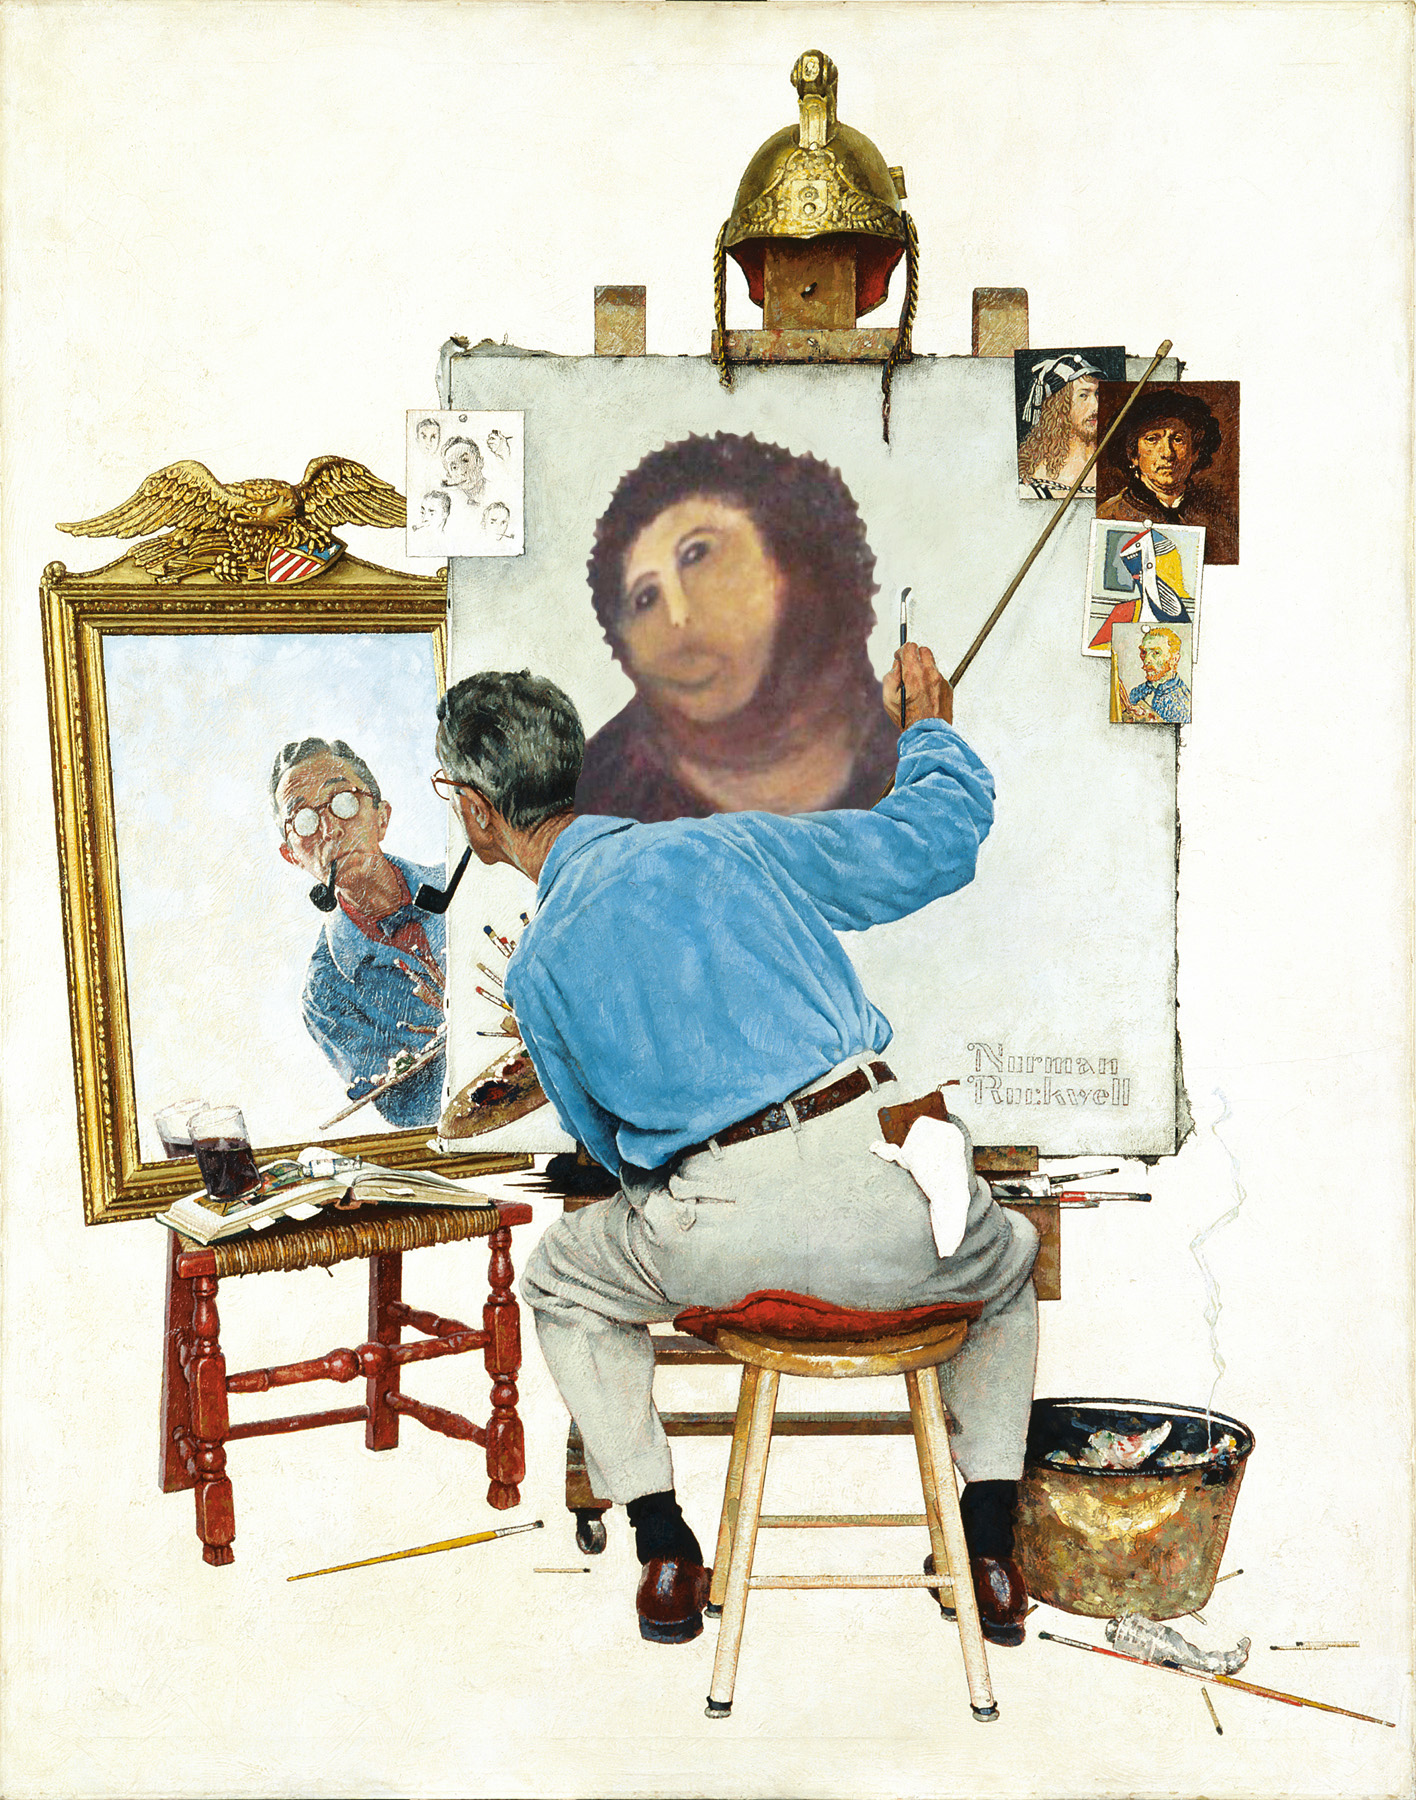 A portrait within a portrait